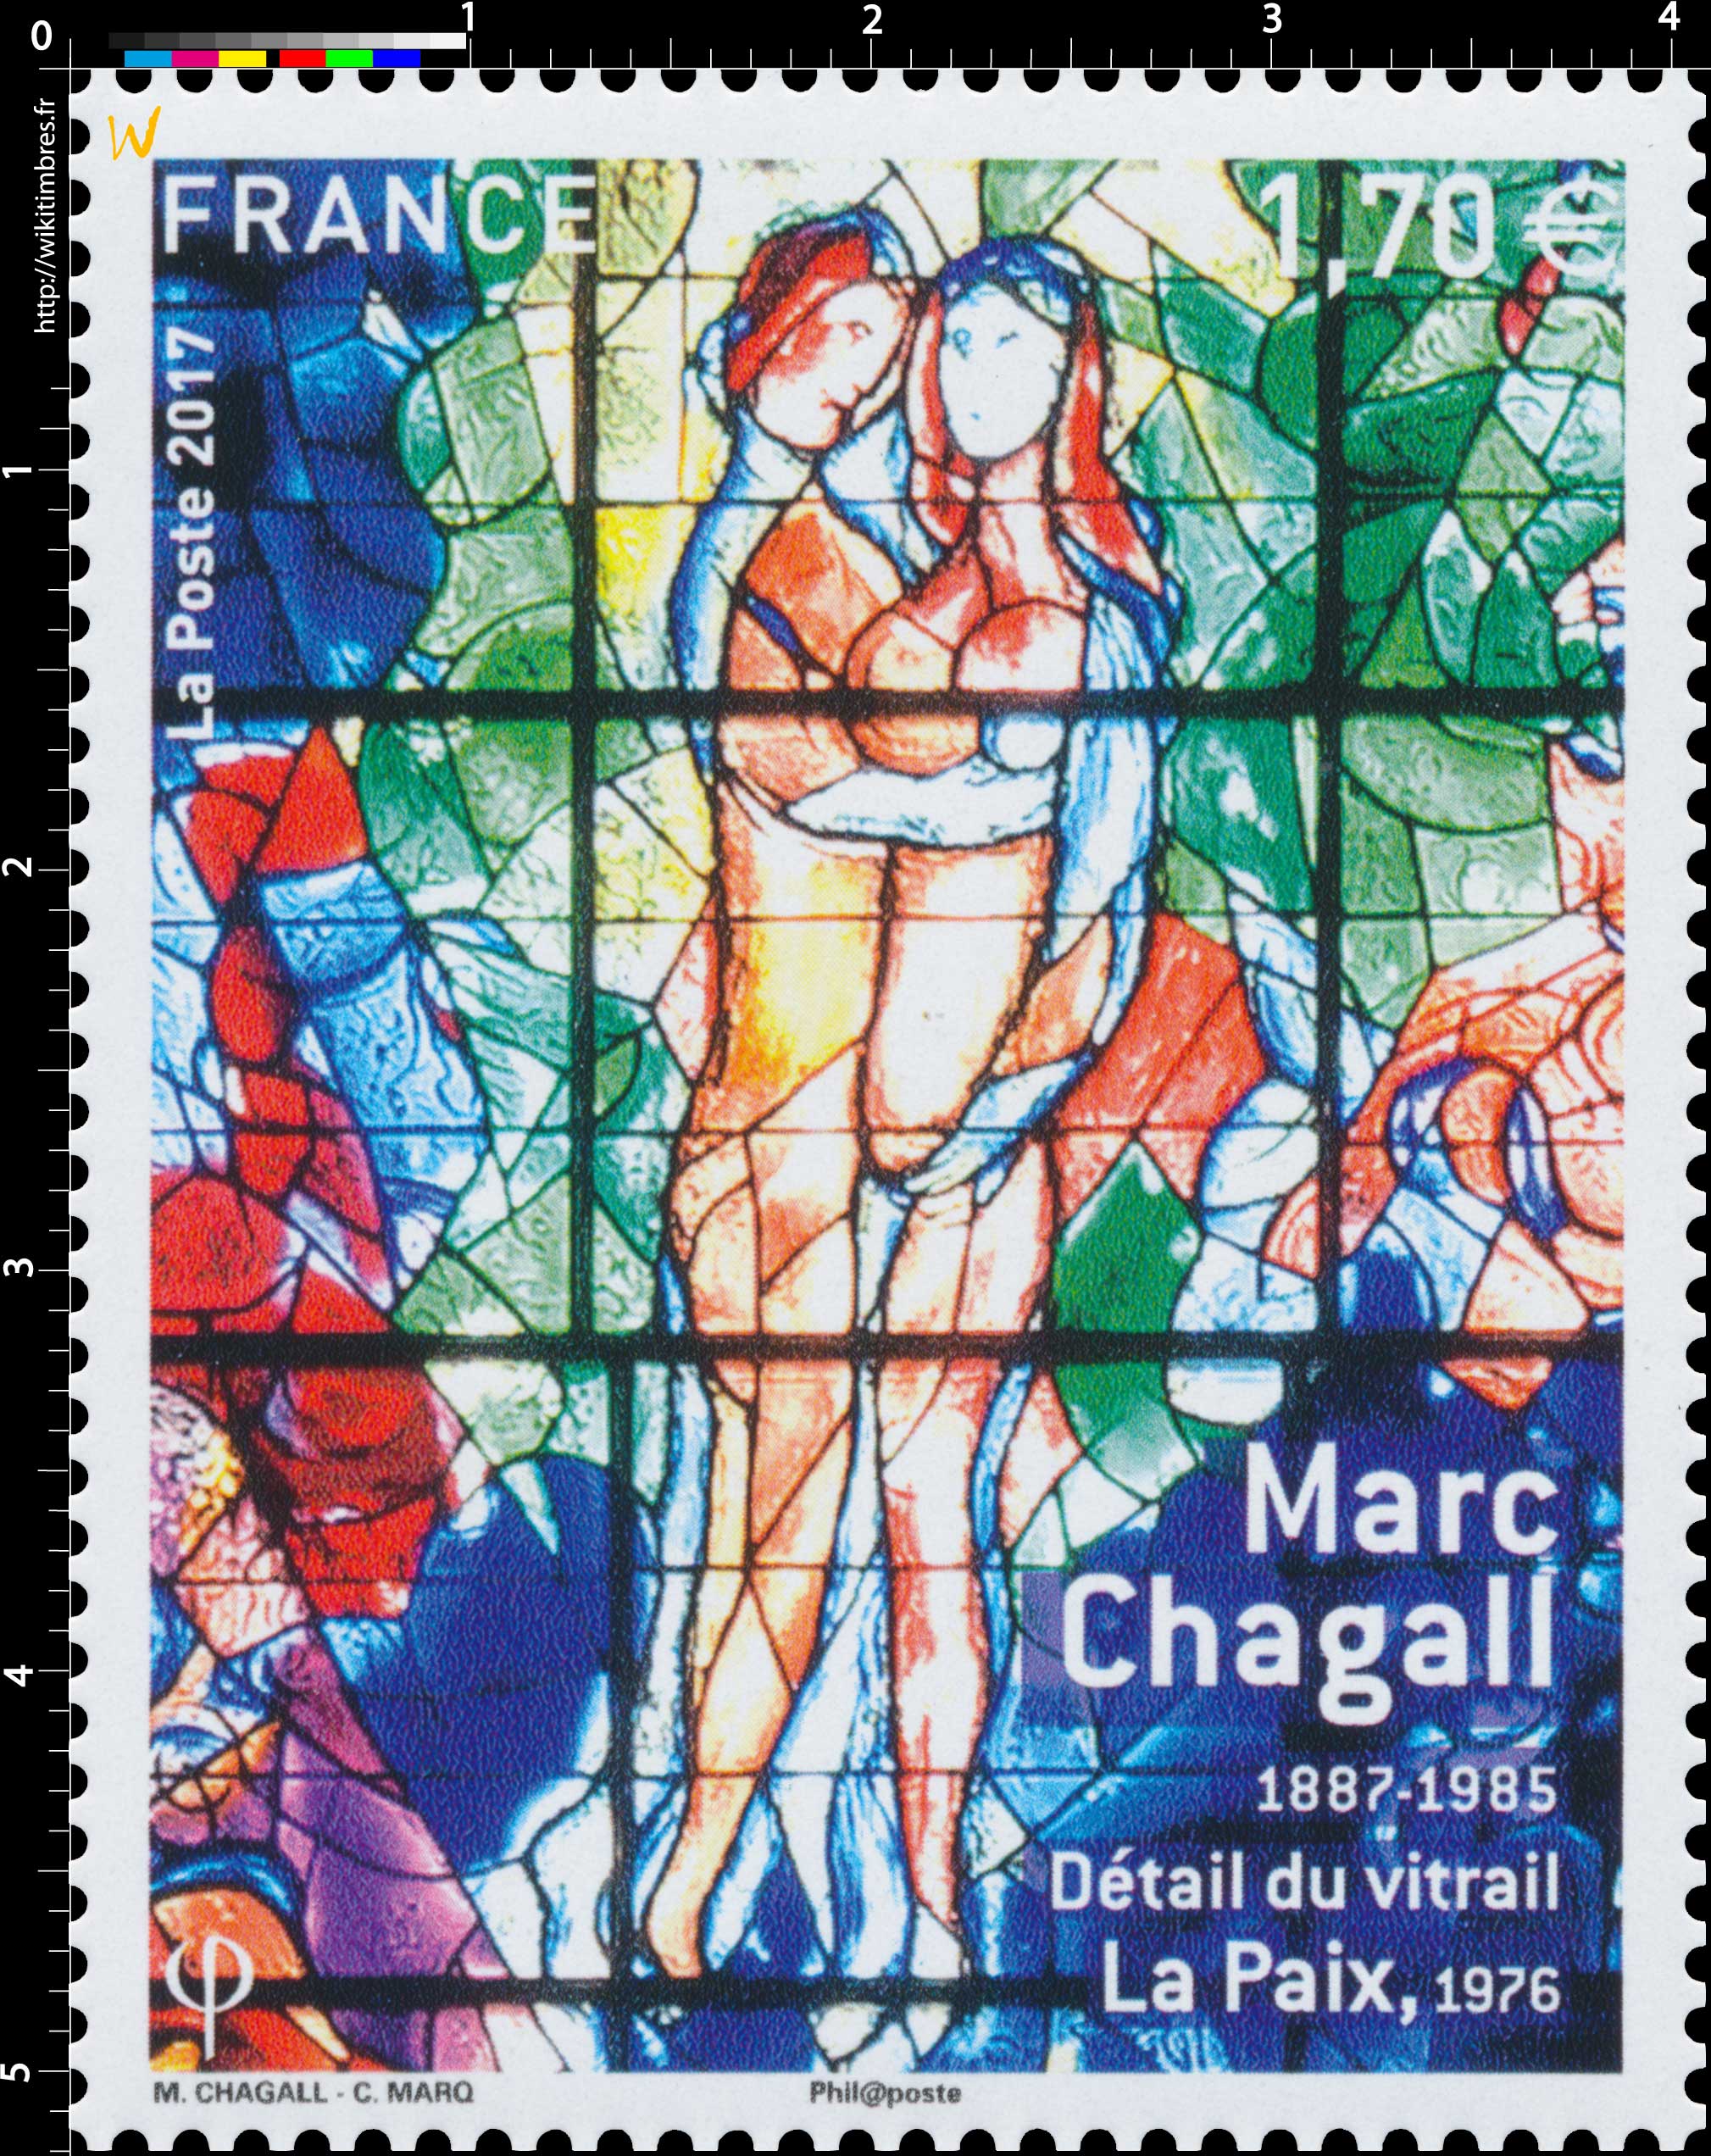 2017 Marc Chagall 1887-1985 - Détail du vitrail La Paix 1976